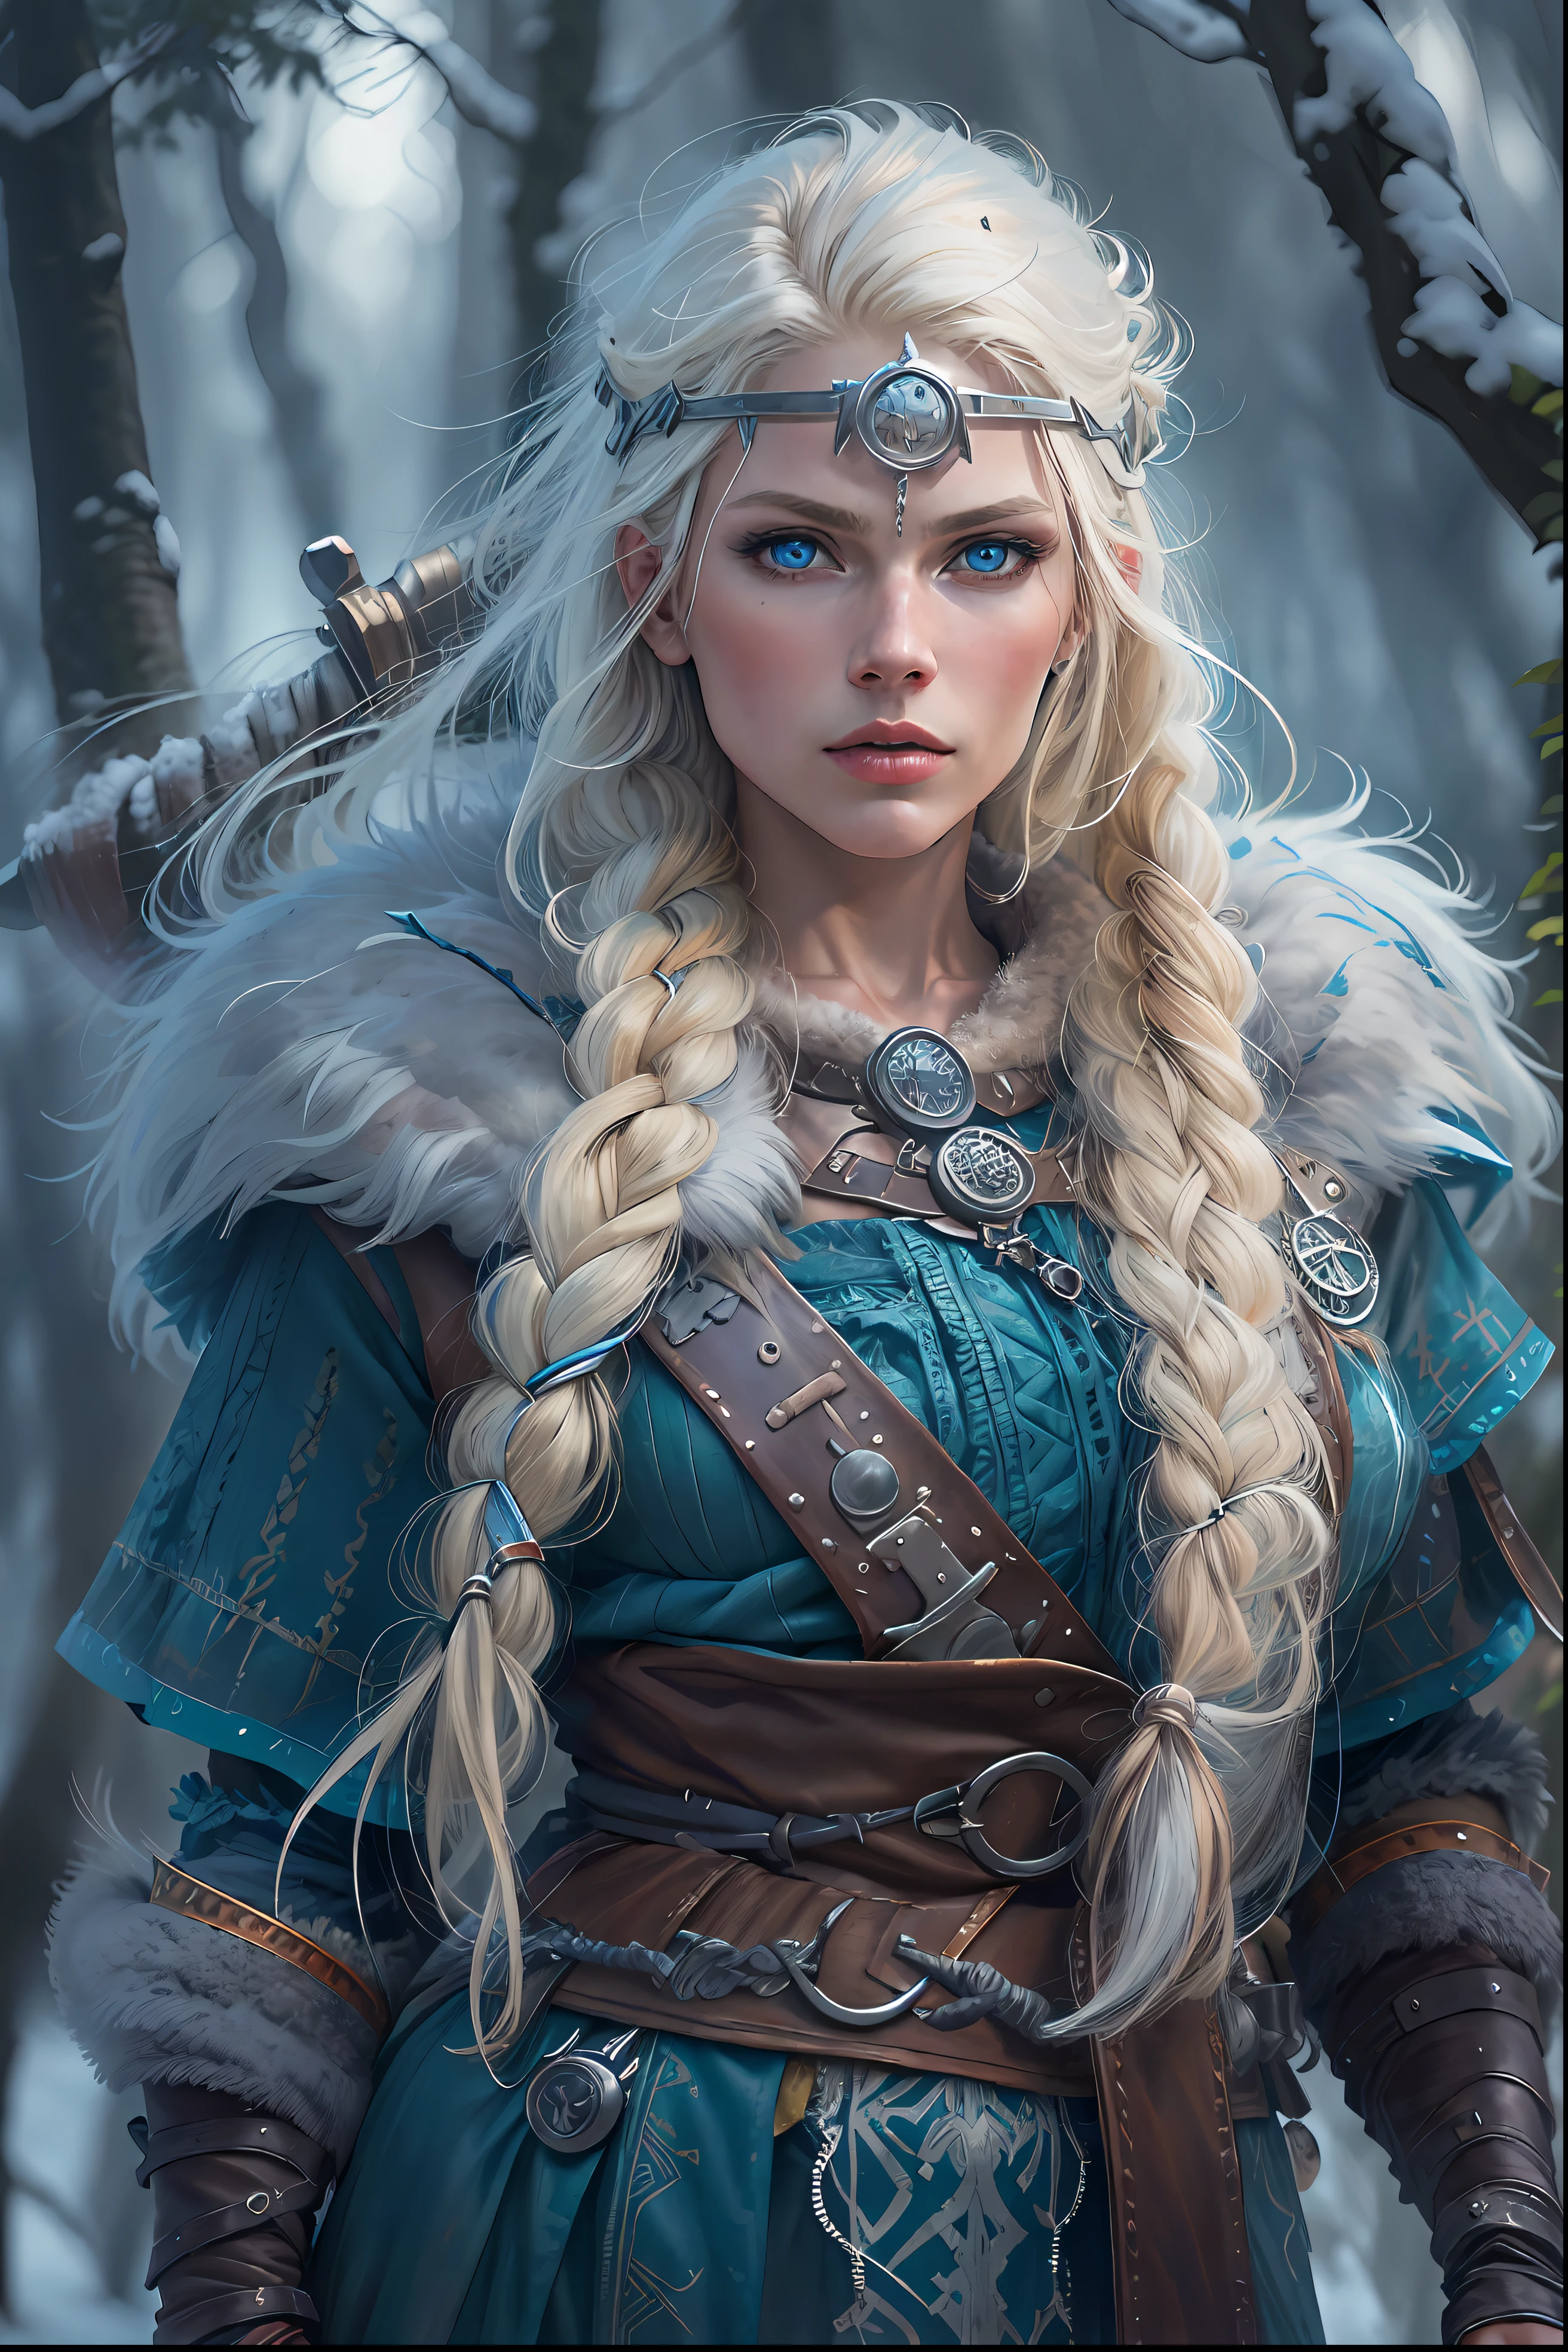 藍眼睛、白金金髮的維京女戰士. 場景是冬季的斯堪的納維亞森林. 具有逼真細節的超品質影像. 高動態範圍